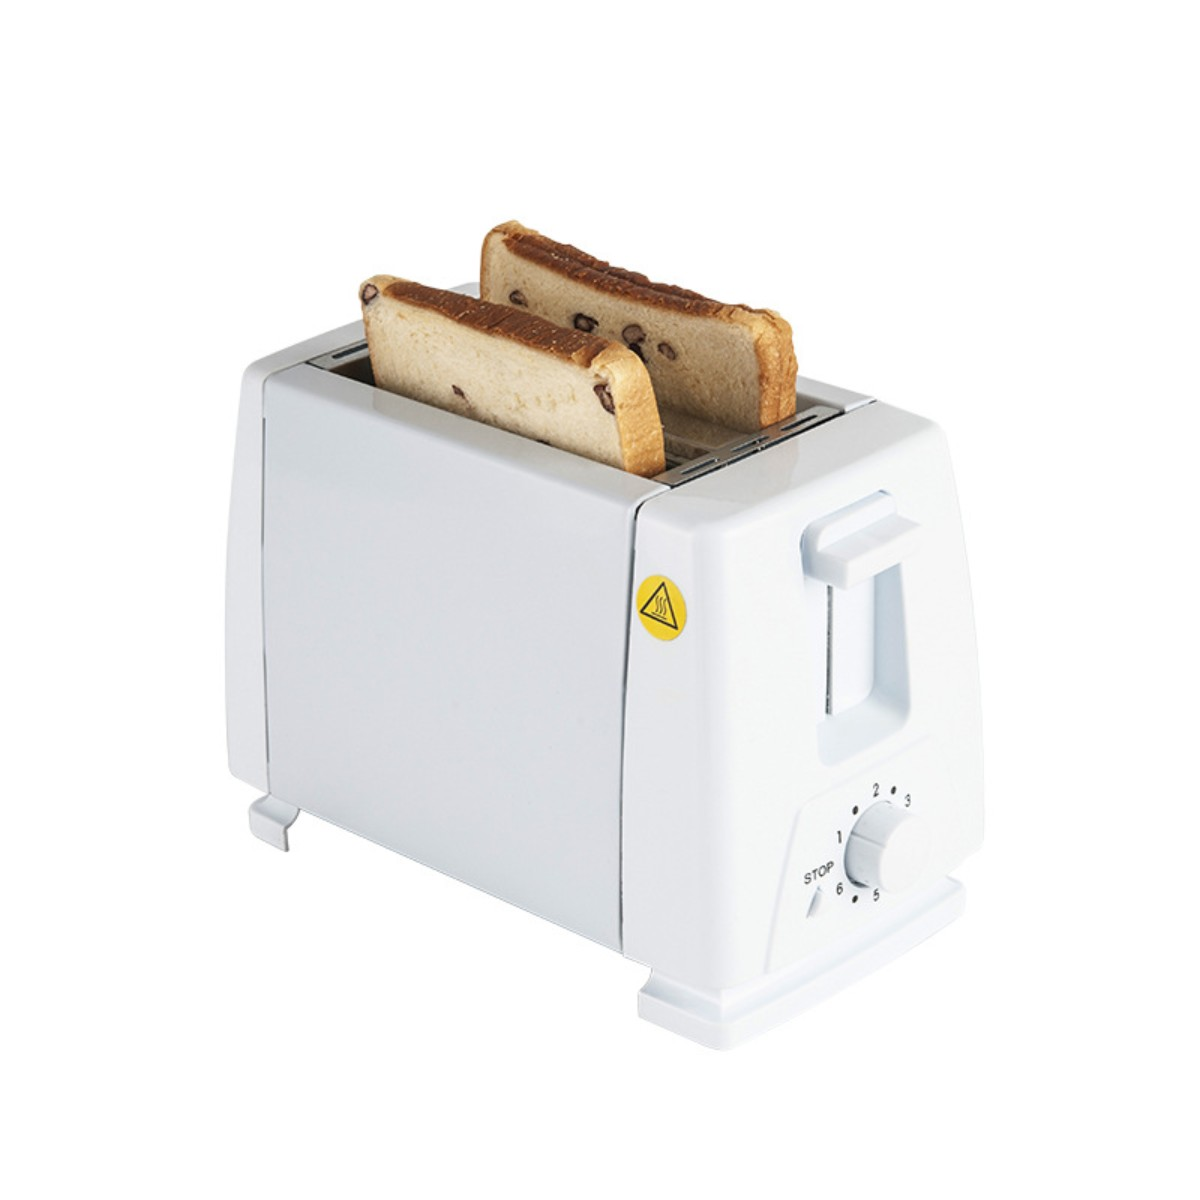 SYNTEK Maschine Frühstück Toaster Watt, (750 Brot 2) Toaster Maschine Weiß Schlitze: Toaster weißer Treiber Sandwich